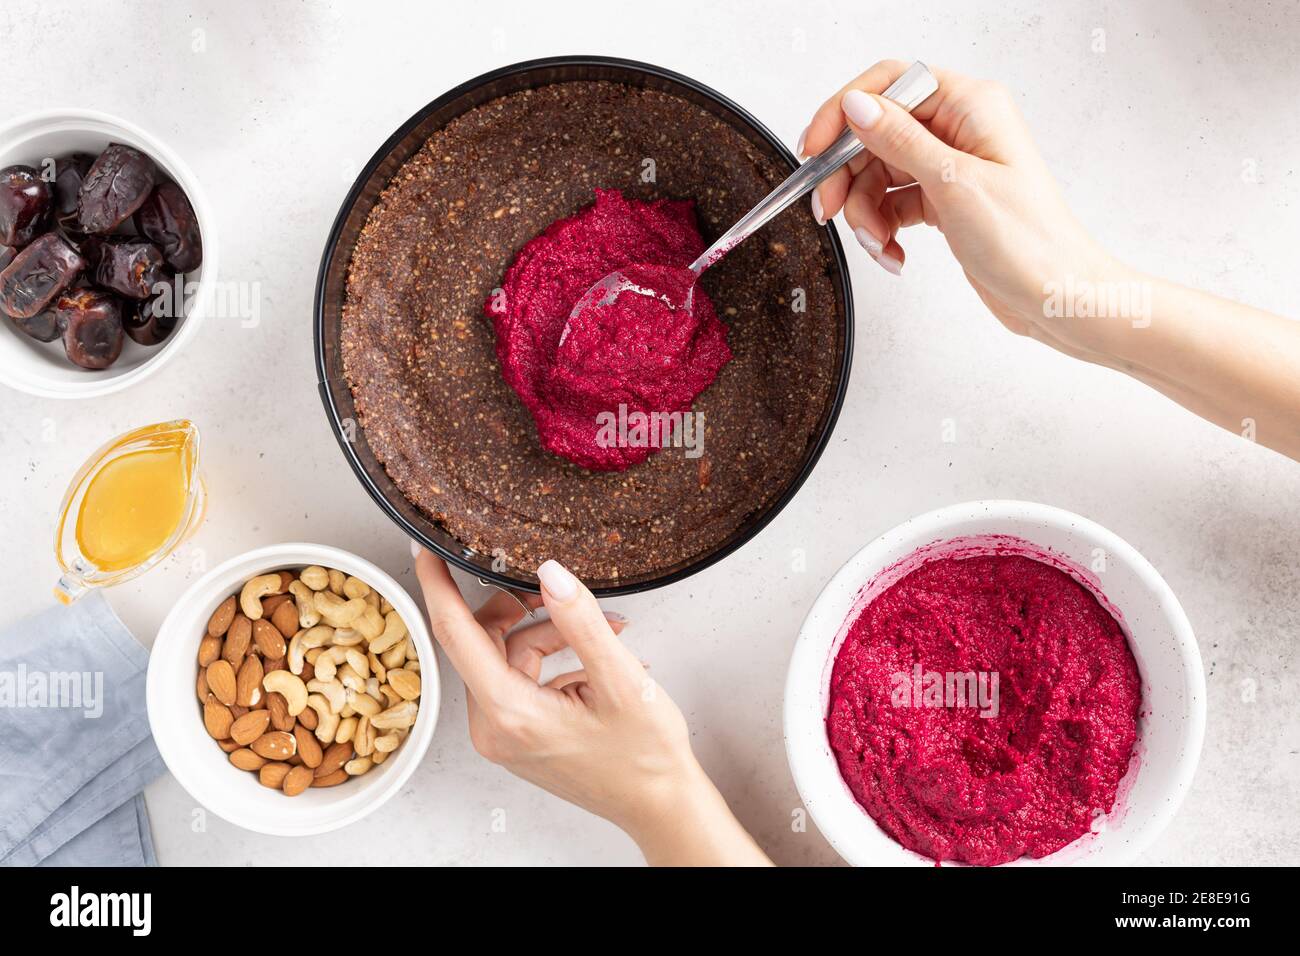 le mani femminili cucinano la torta vegana. cibo alternativo sano Foto Stock